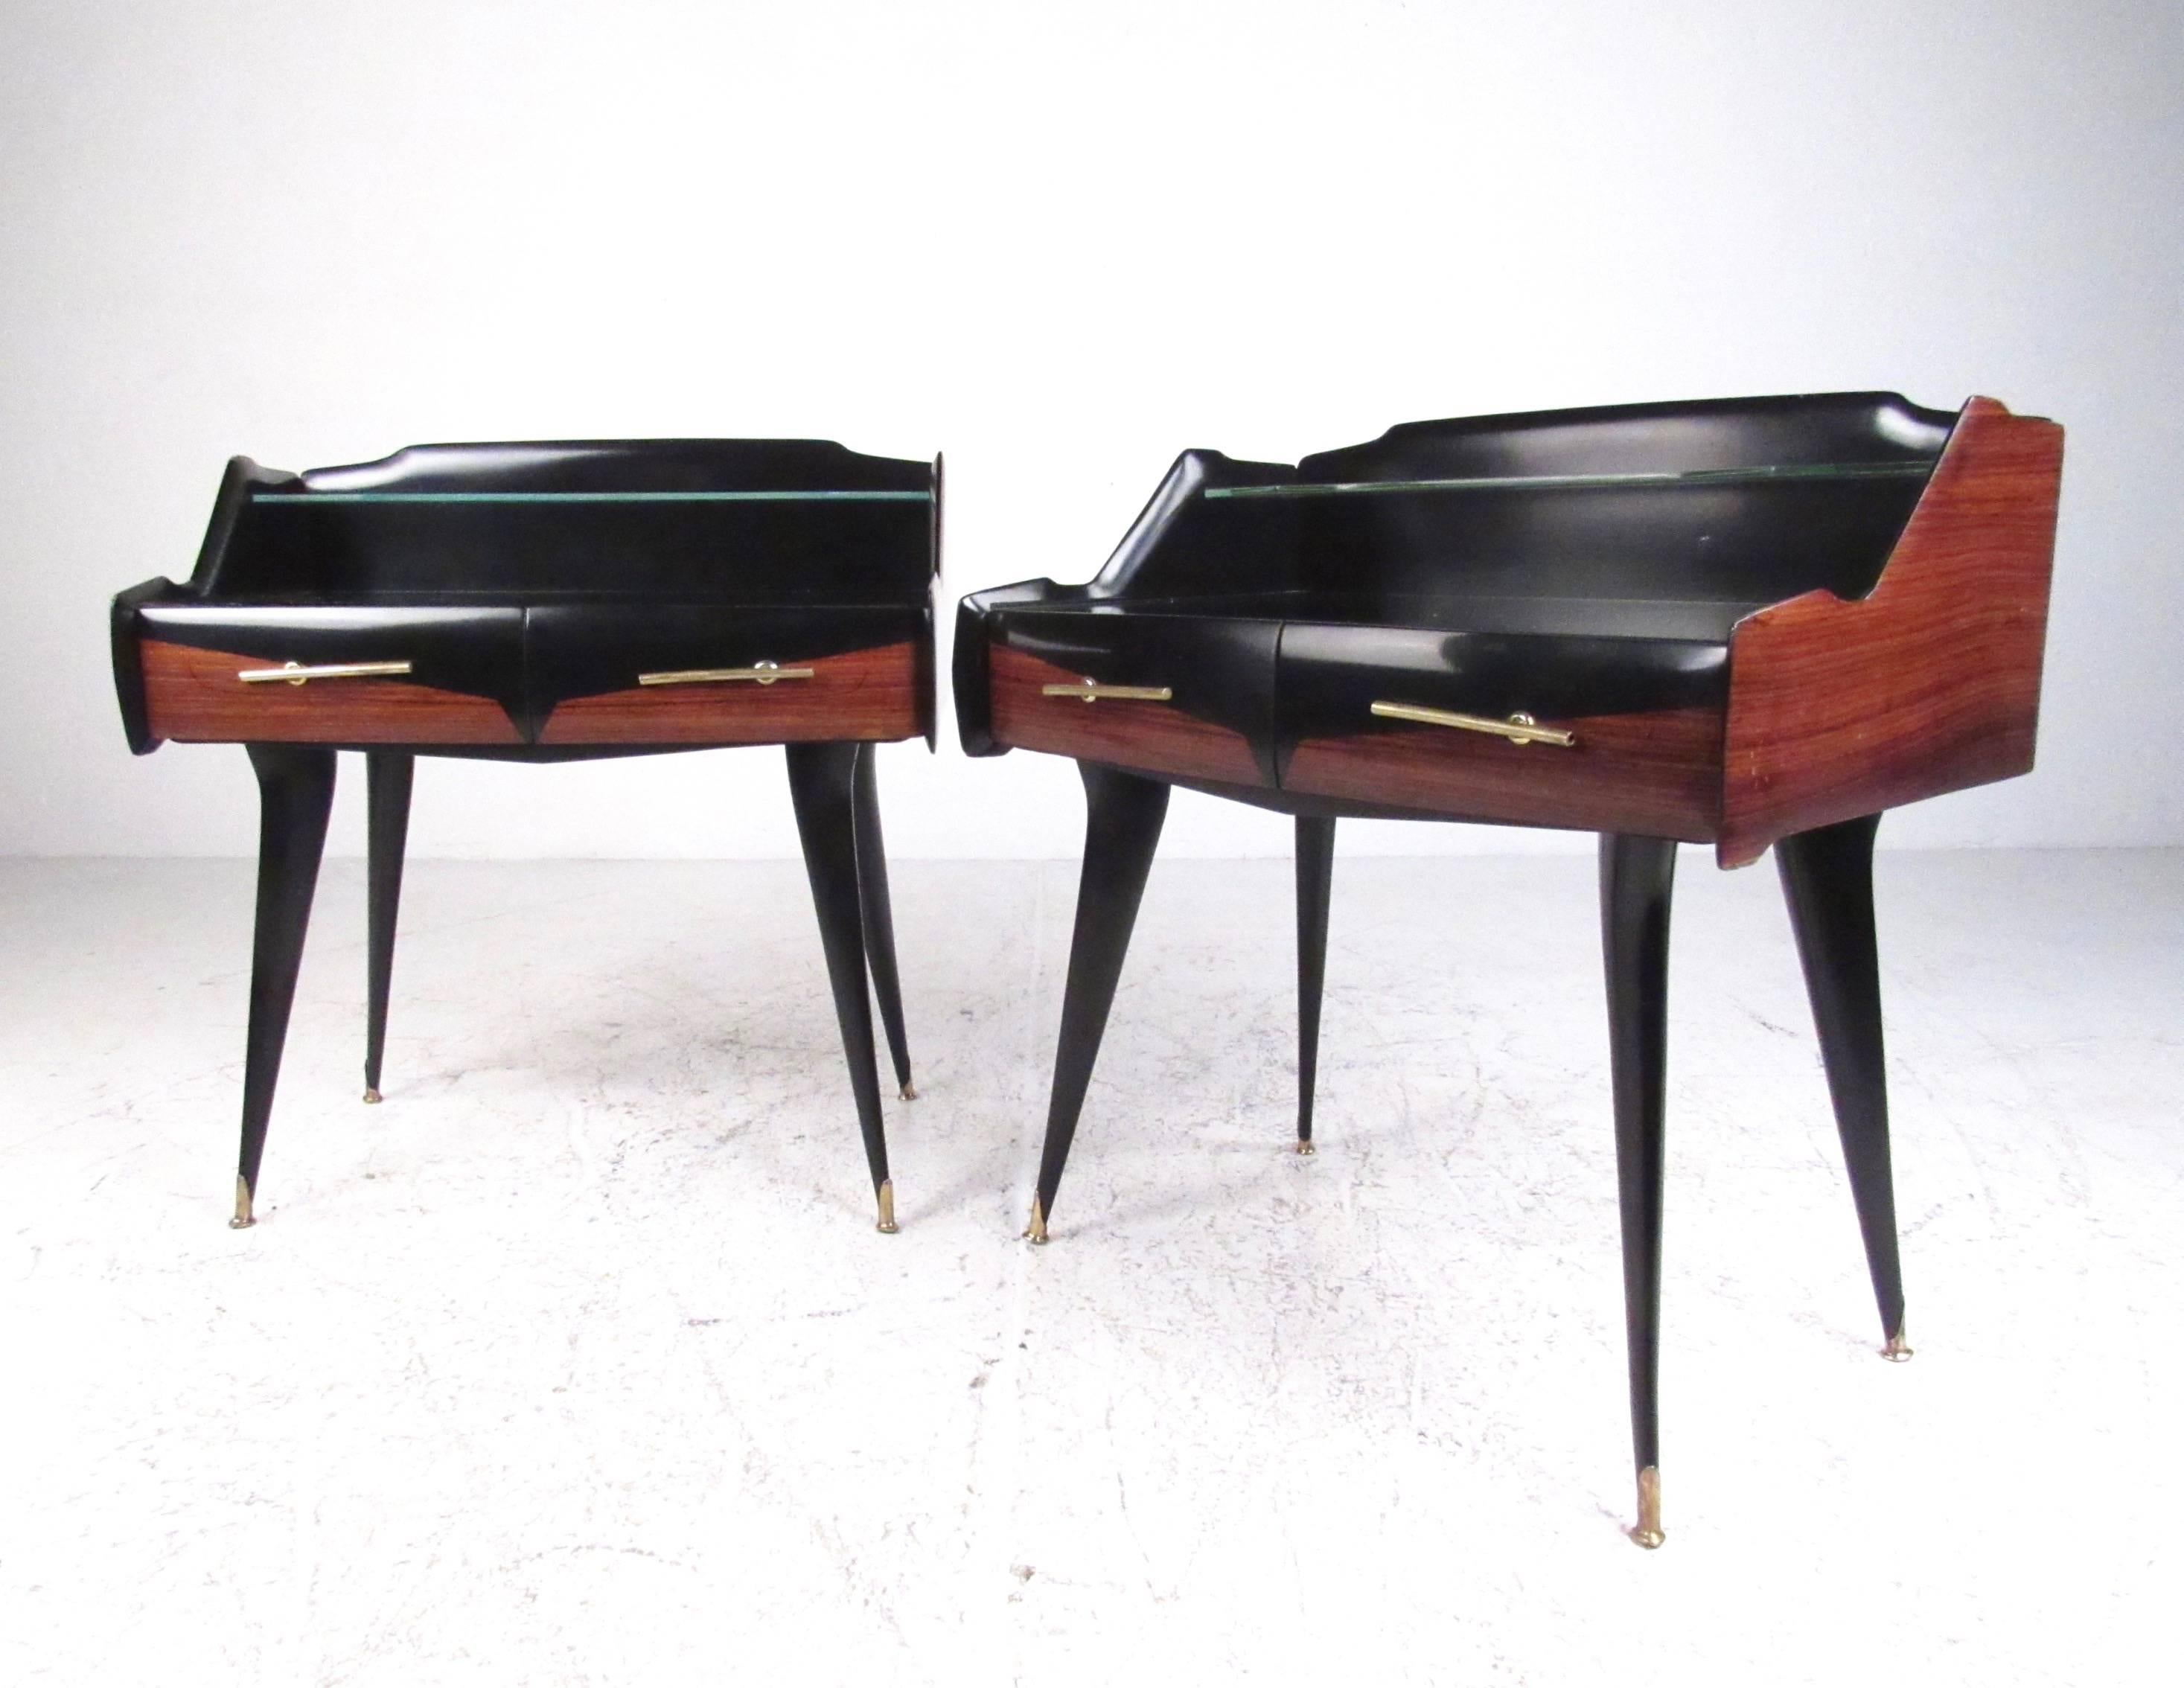 Cette paire de tables de nuit des années 1950 présente un design moderne italien élégant et constitue une excellente table de chevet à deux niveaux pour tout intérieur. Une élégante tablette en verre, un cadre sculpté de deux tons et des pieds